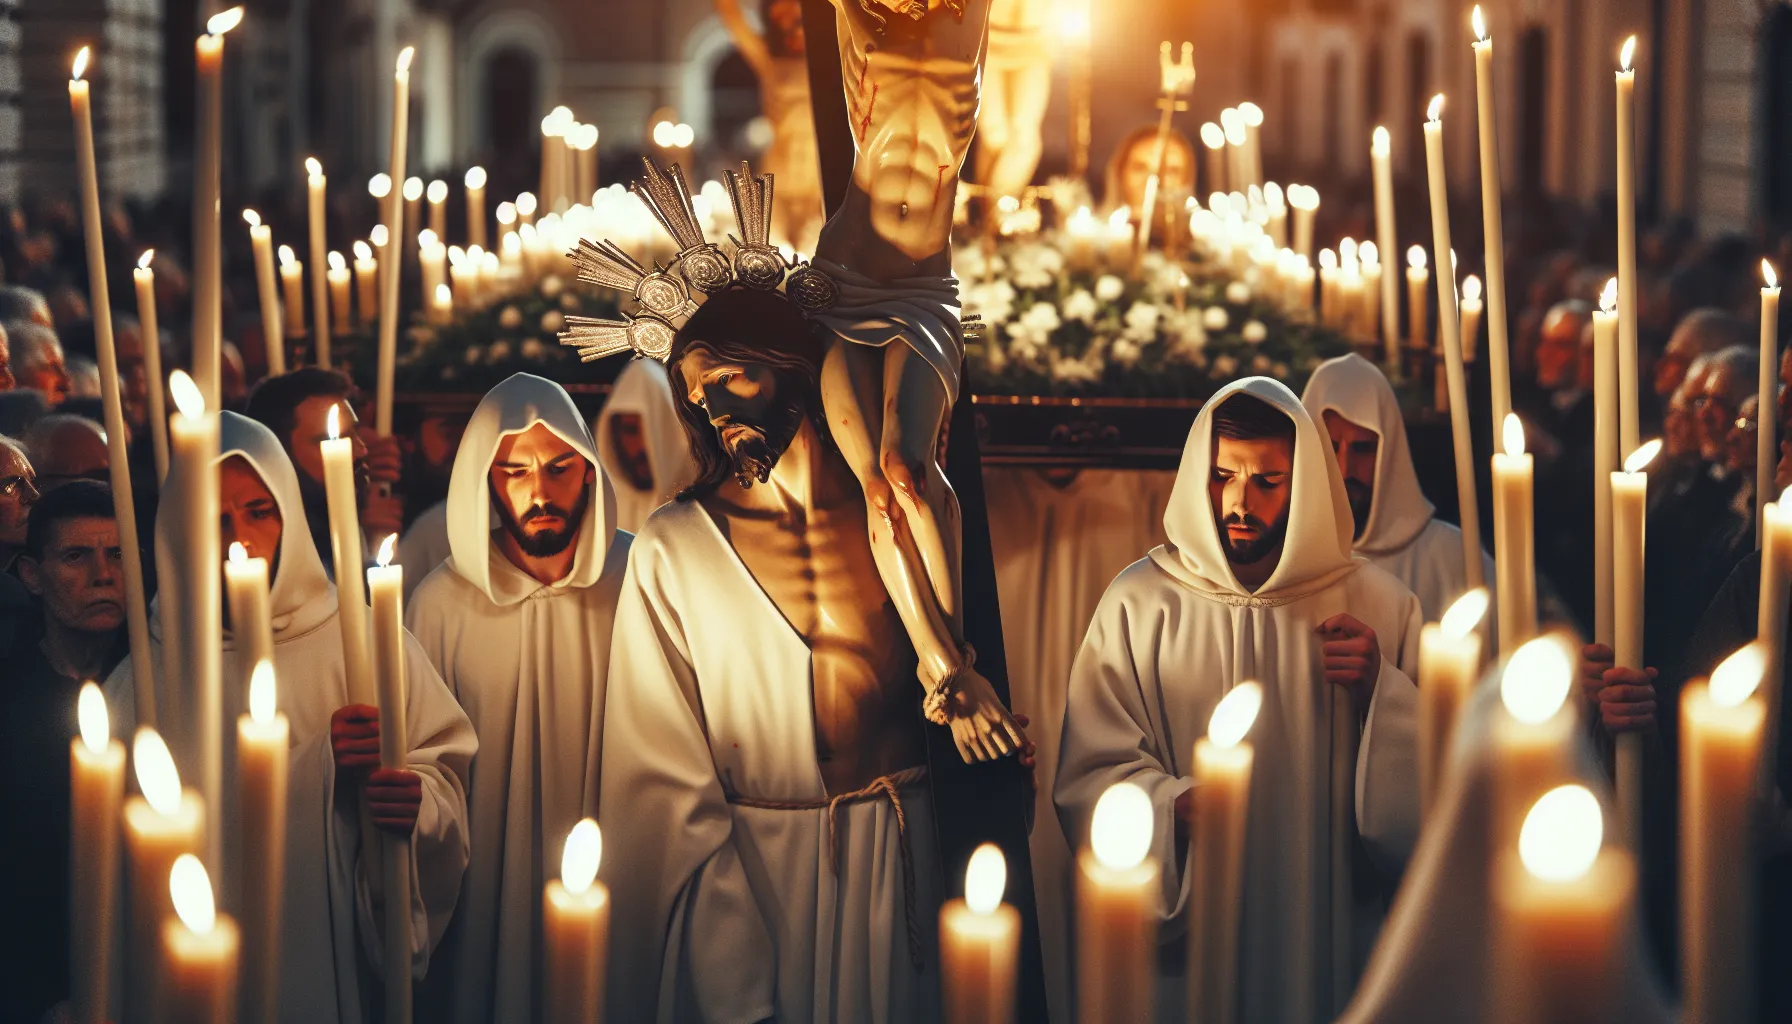 Imagen de una procesión de Semana Santa durante el Jueves Santo, con nazarenos llevando velas y la imagen de Jesús crucificado, mostrando devoción y solemnidad.